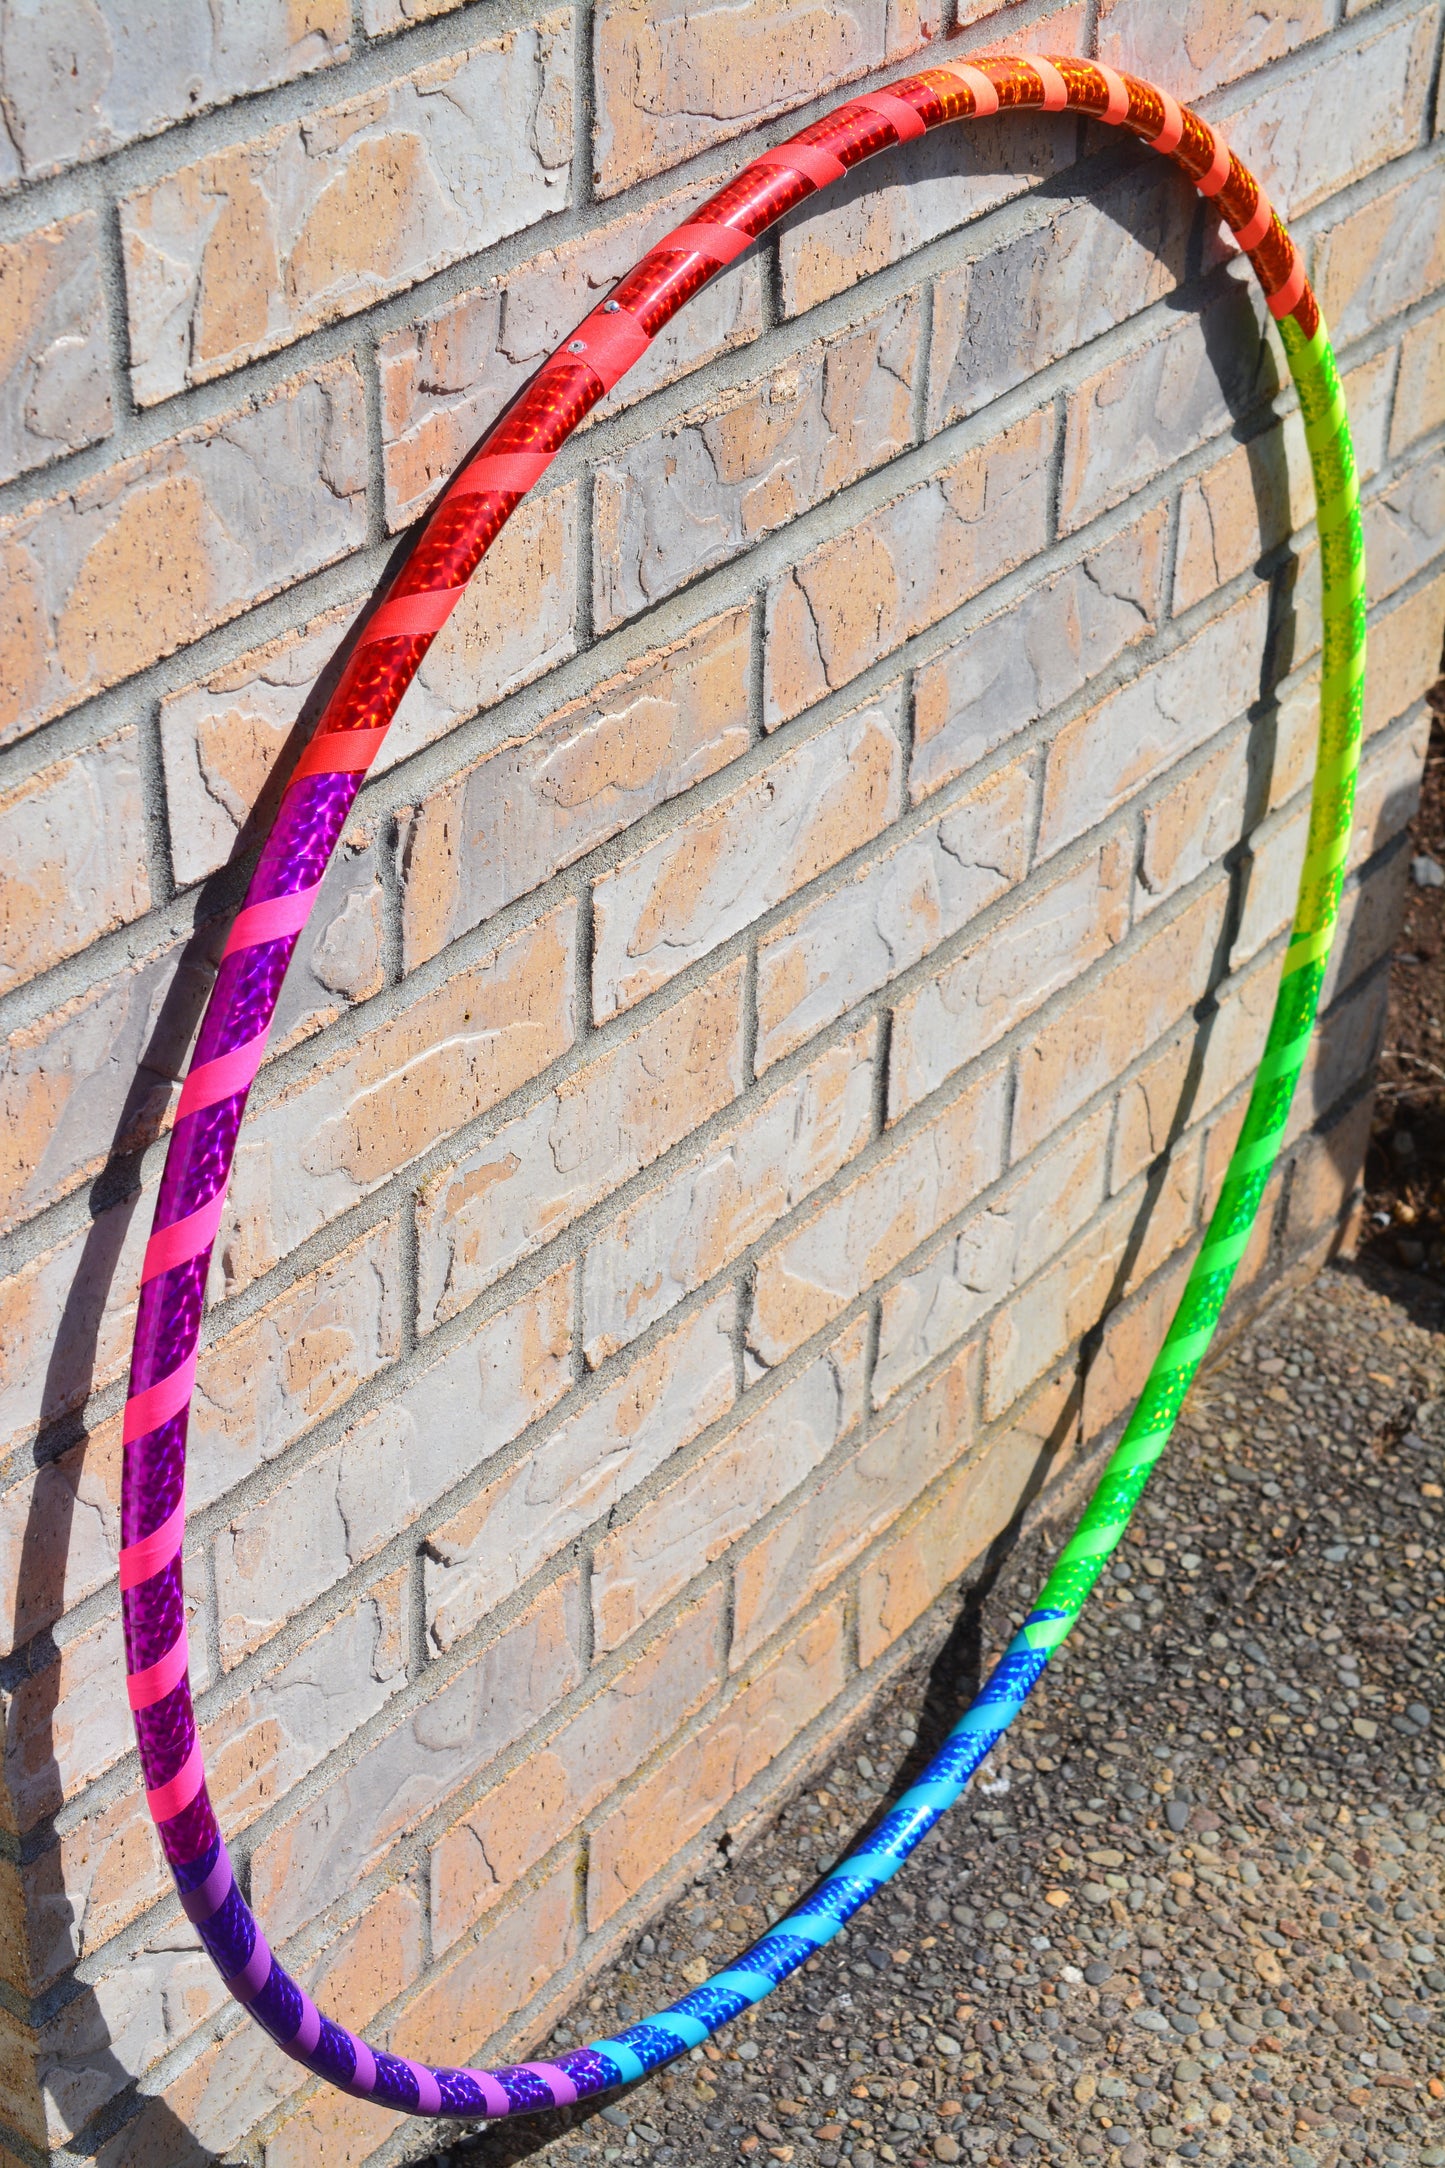 Rainbow Prism Taped Hoops ~ Beginner & Kids Fitness & Practice Hoops